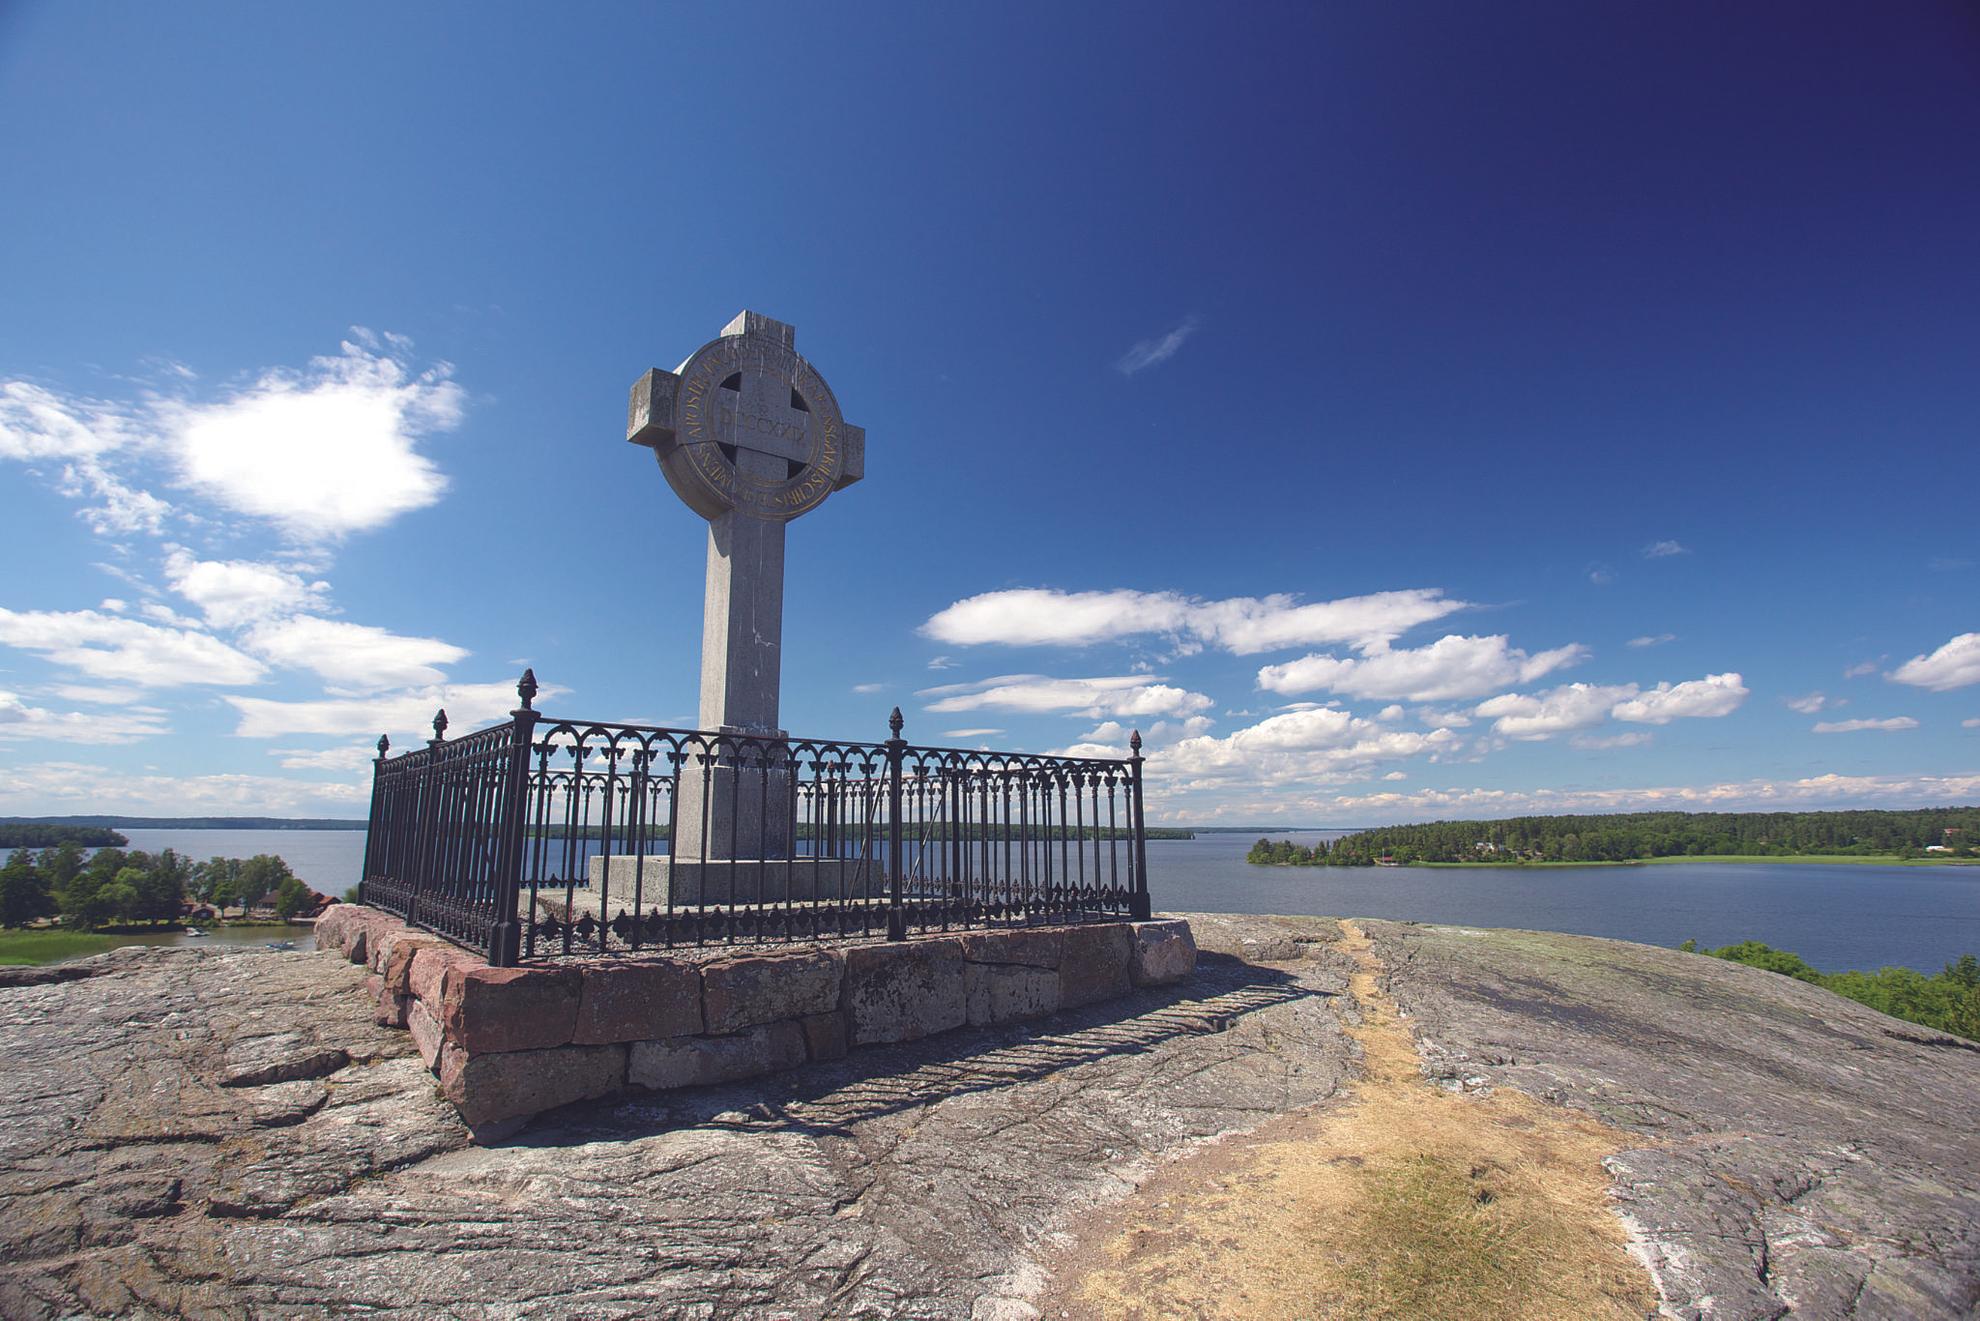 Das Kreuz von Ansgar steht auf einer kahlen Klippe. Man kann den See Mälaren, kleine Inseln und einen blauen Himmel im Hintergrund sehen.